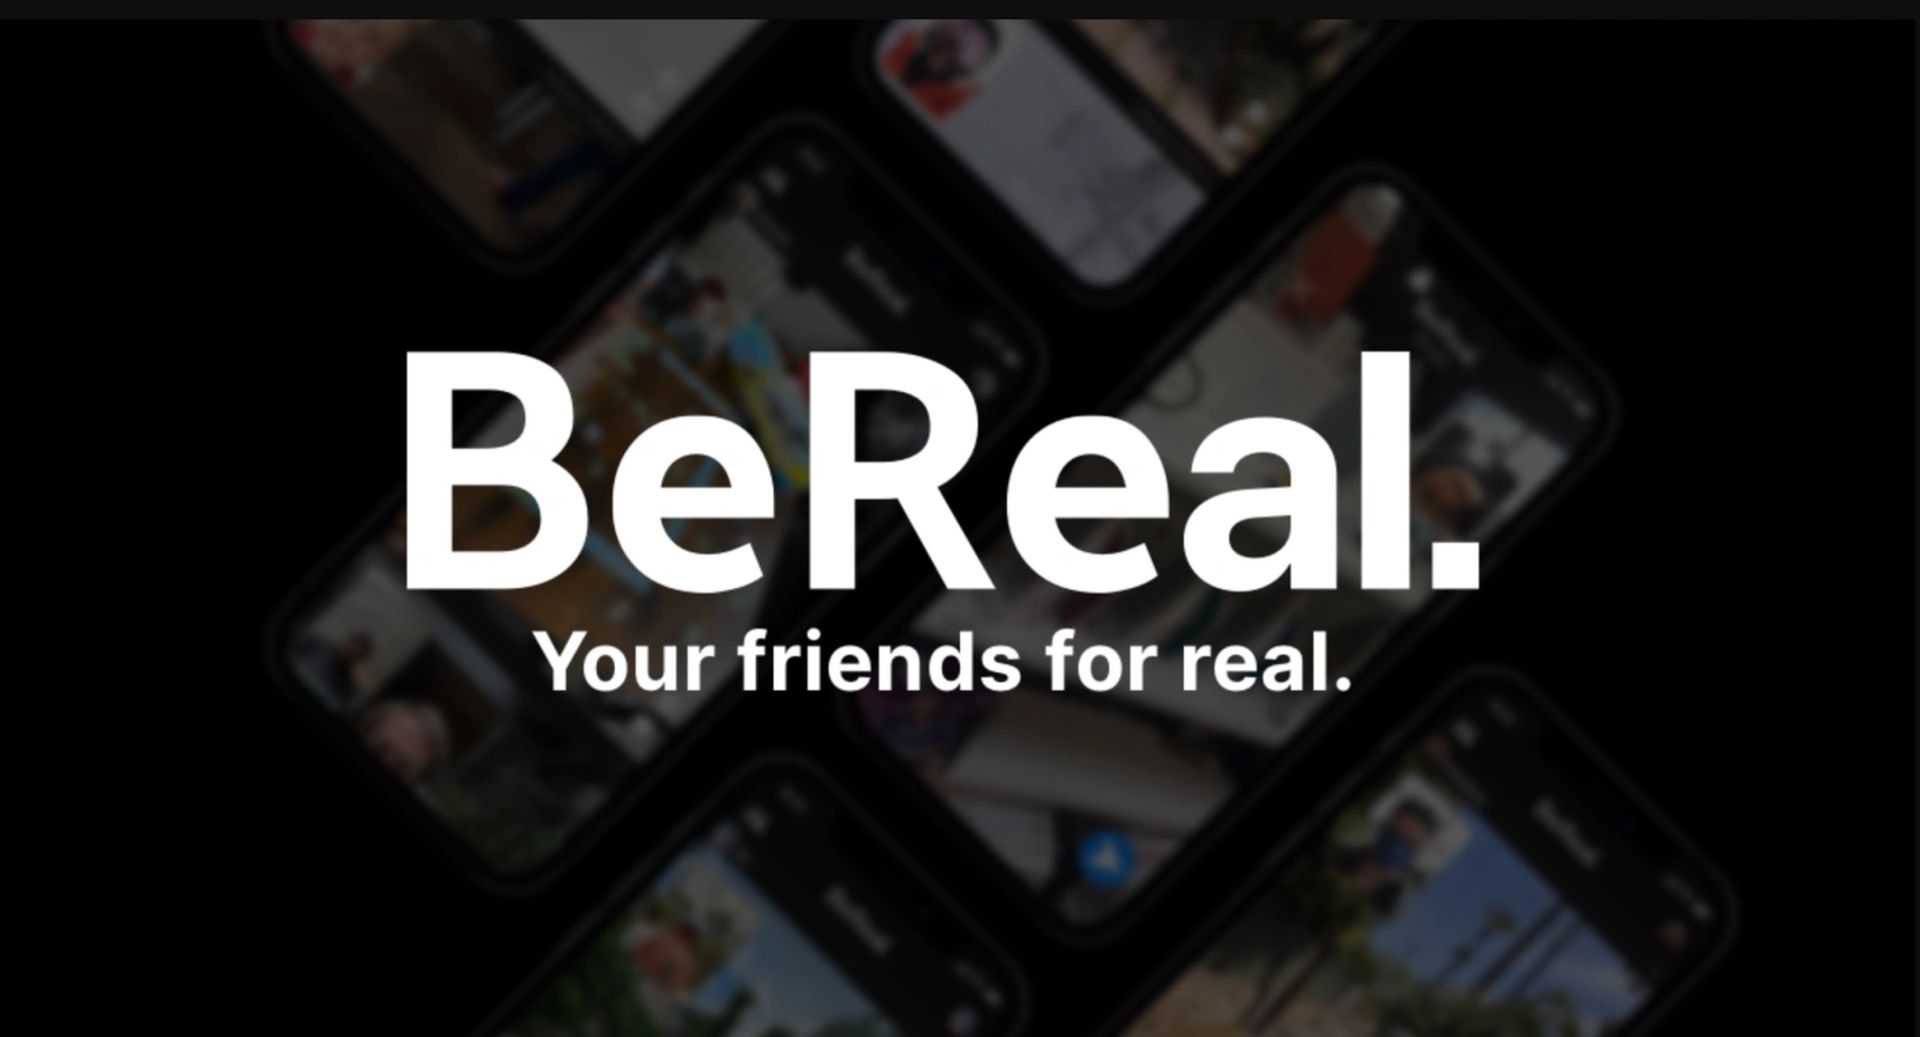 Dans cet article, nous allons expliquer comment réparer la demande d'ami BeReal qui ne fonctionne pas, afin que vous puissiez continuer à utiliser l'application de médias sociaux populaire sans problème.